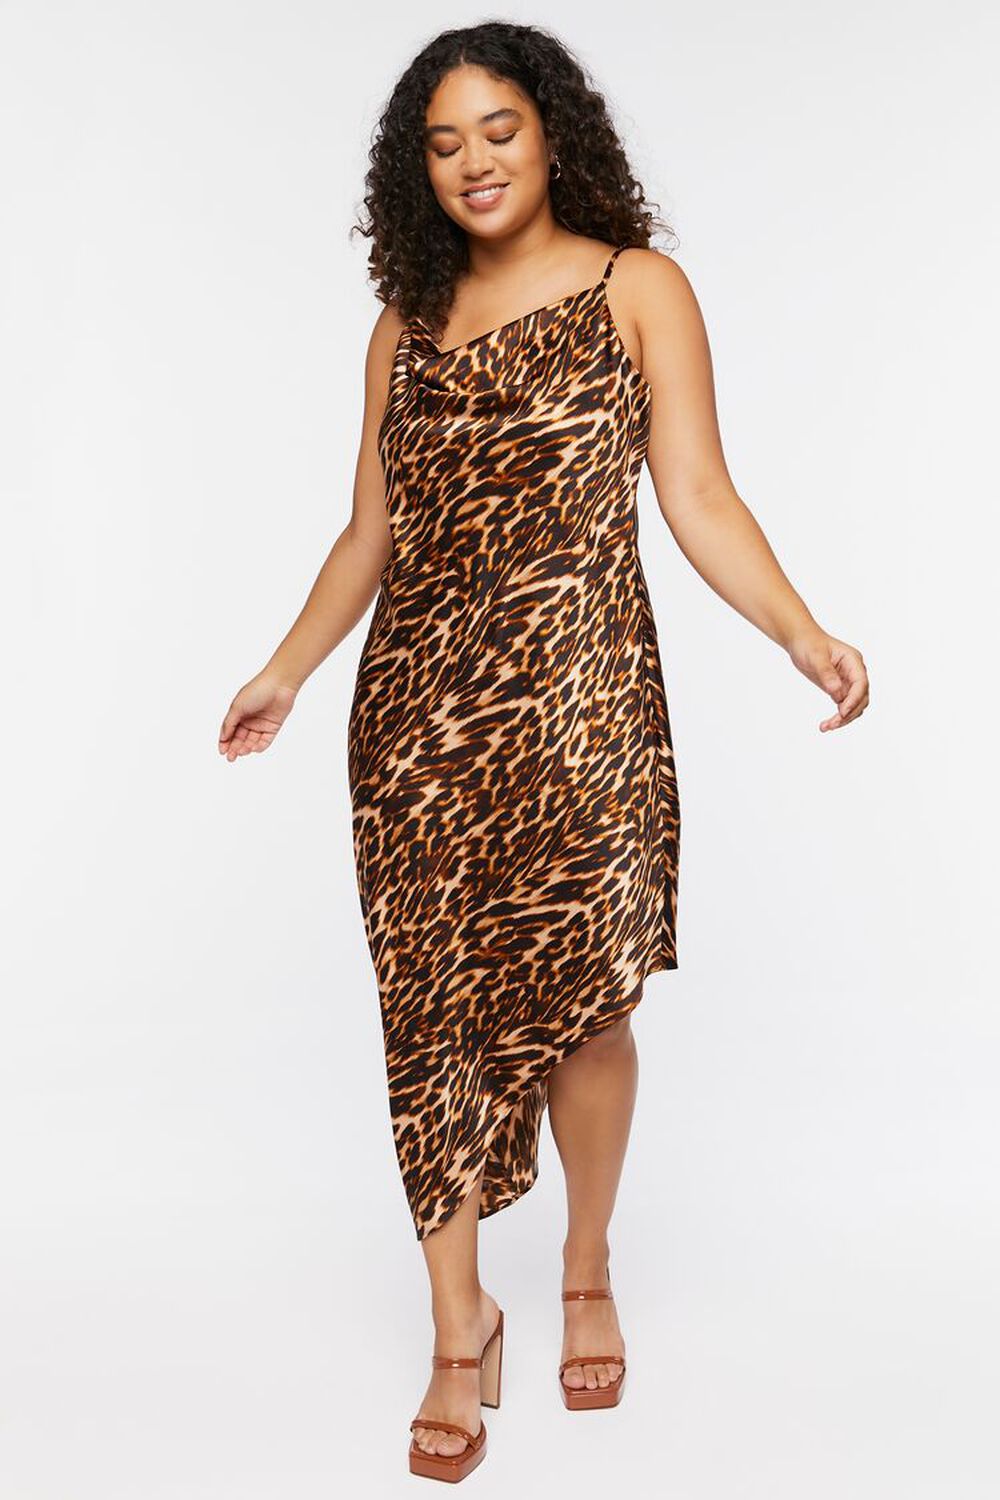 Size Satin Leopard Print Dress